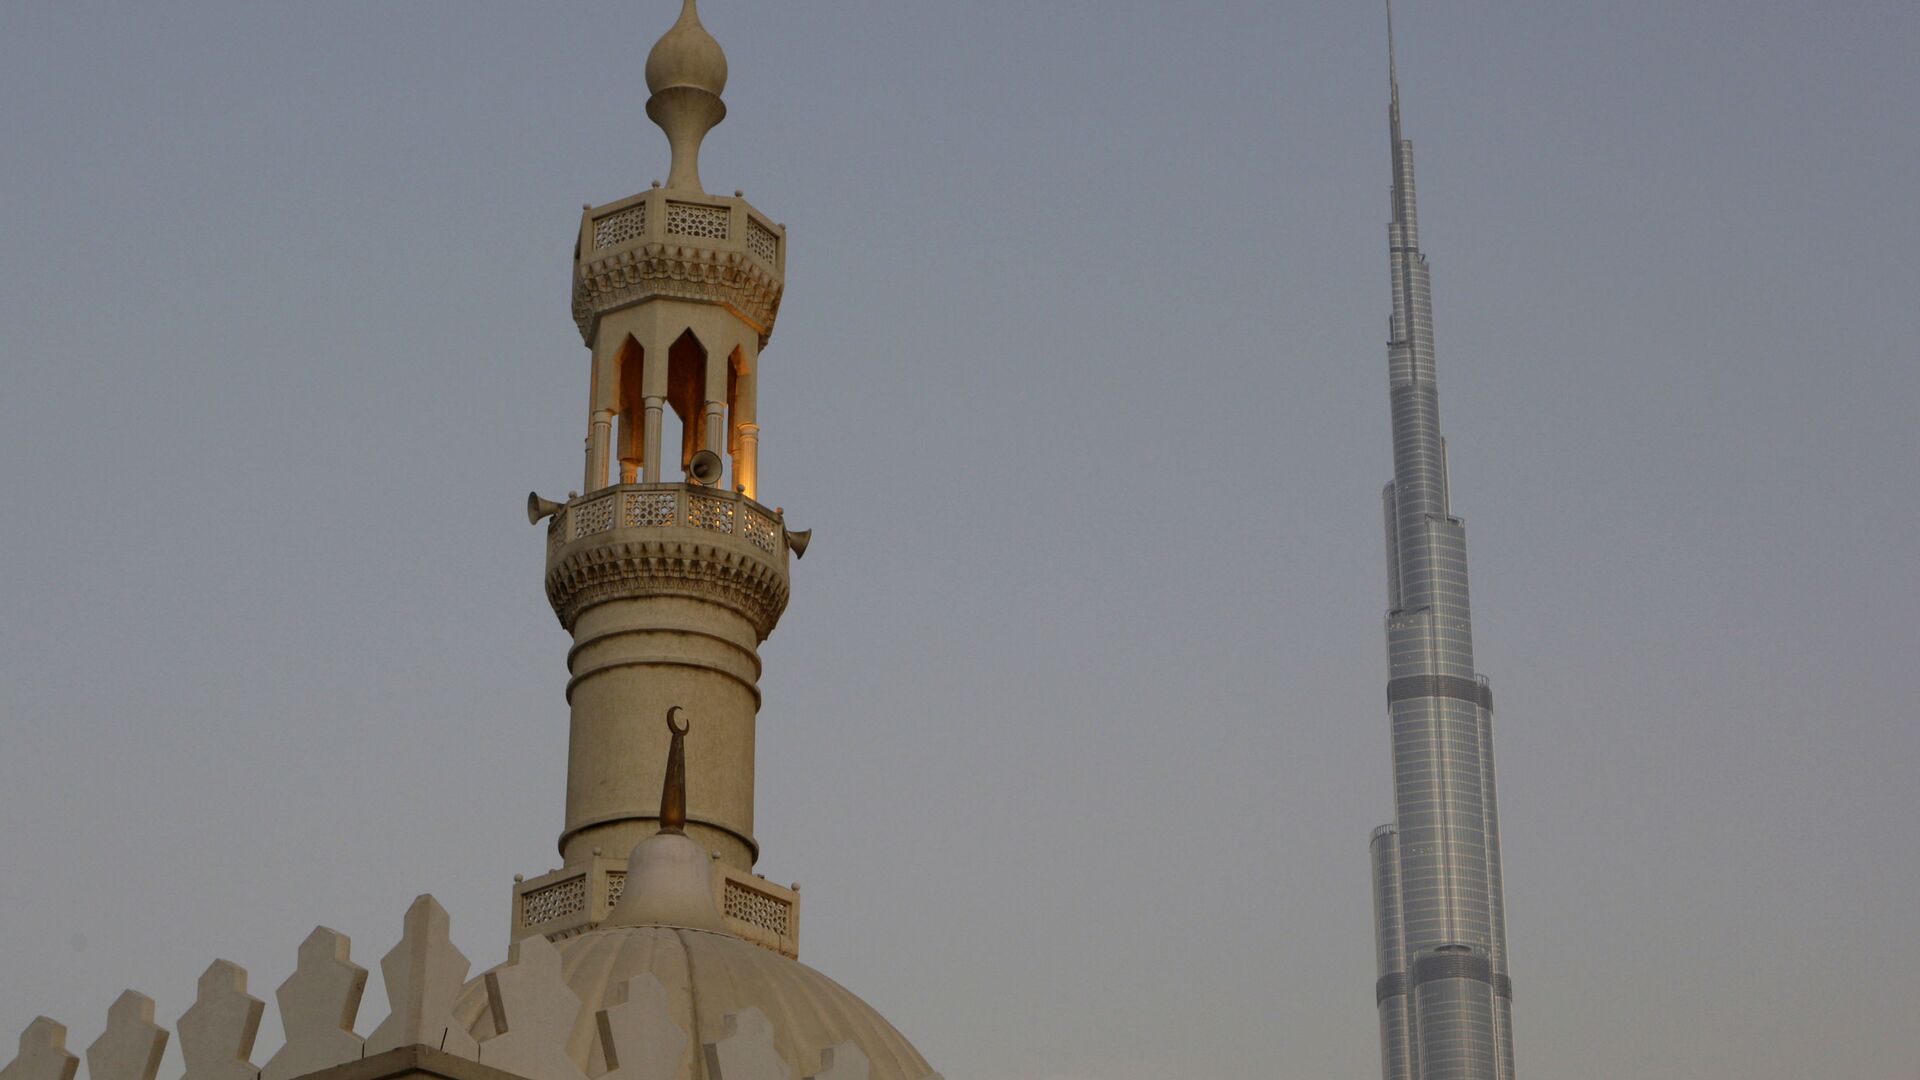 Самая высокая башня в мире, Бурдж-Халифа, видна за минаретом в Дубае - Sputnik Тоҷикистон, 1920, 17.07.2022